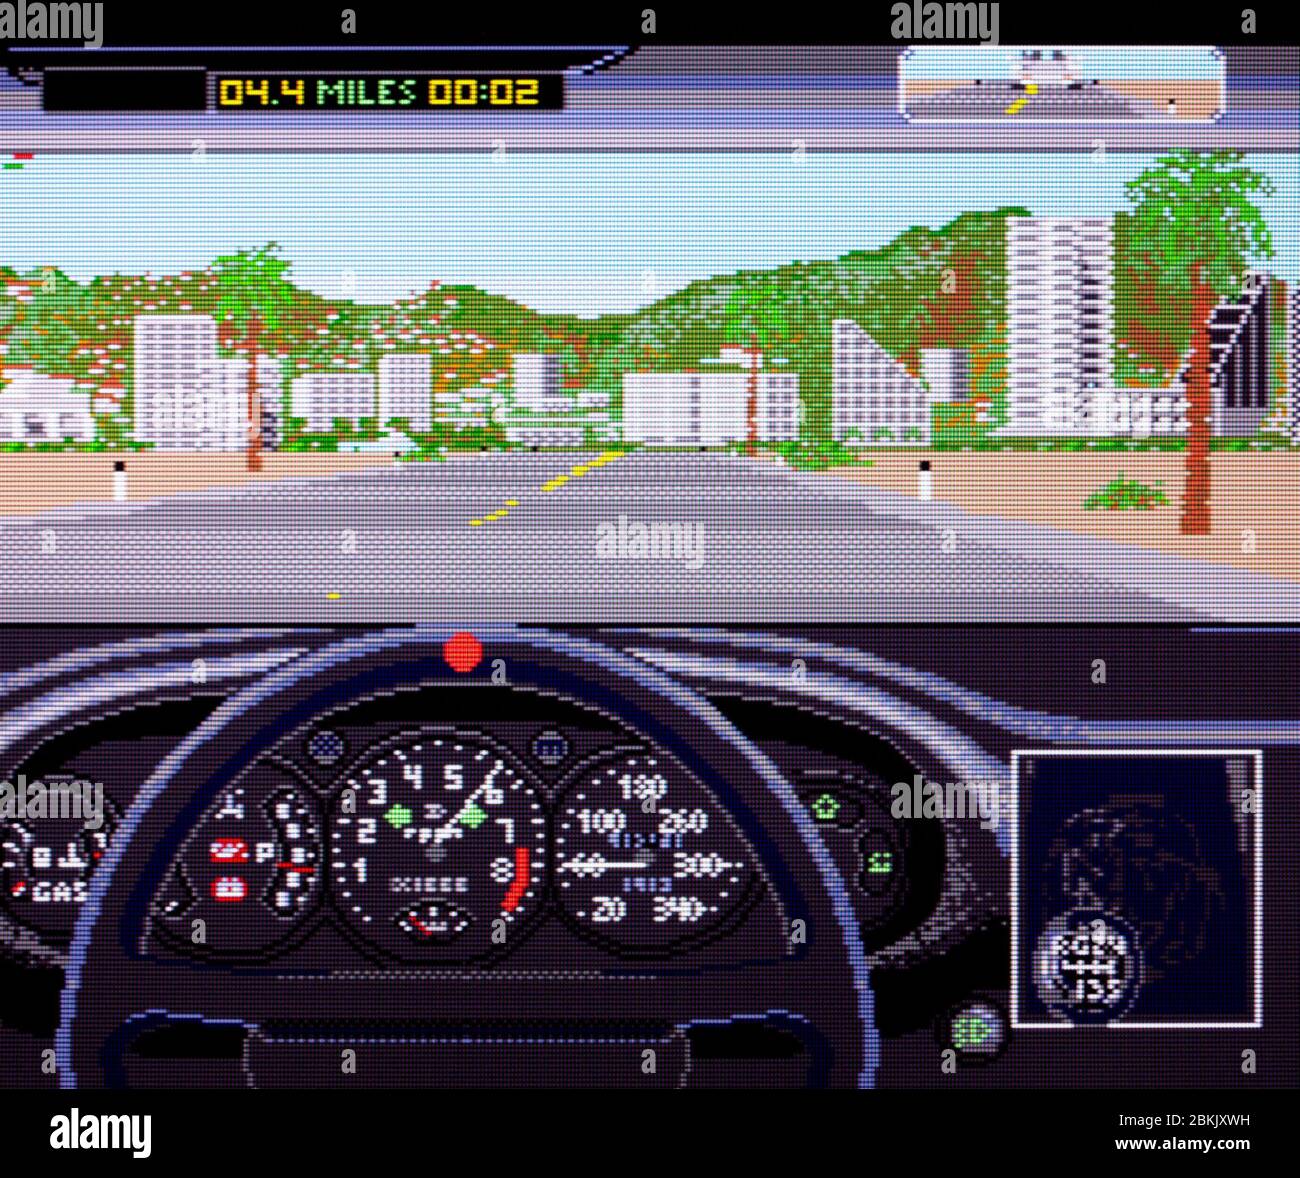 Testez le Duel - Sega Genesis Mega Drive - usage éditorial uniquement Banque D'Images